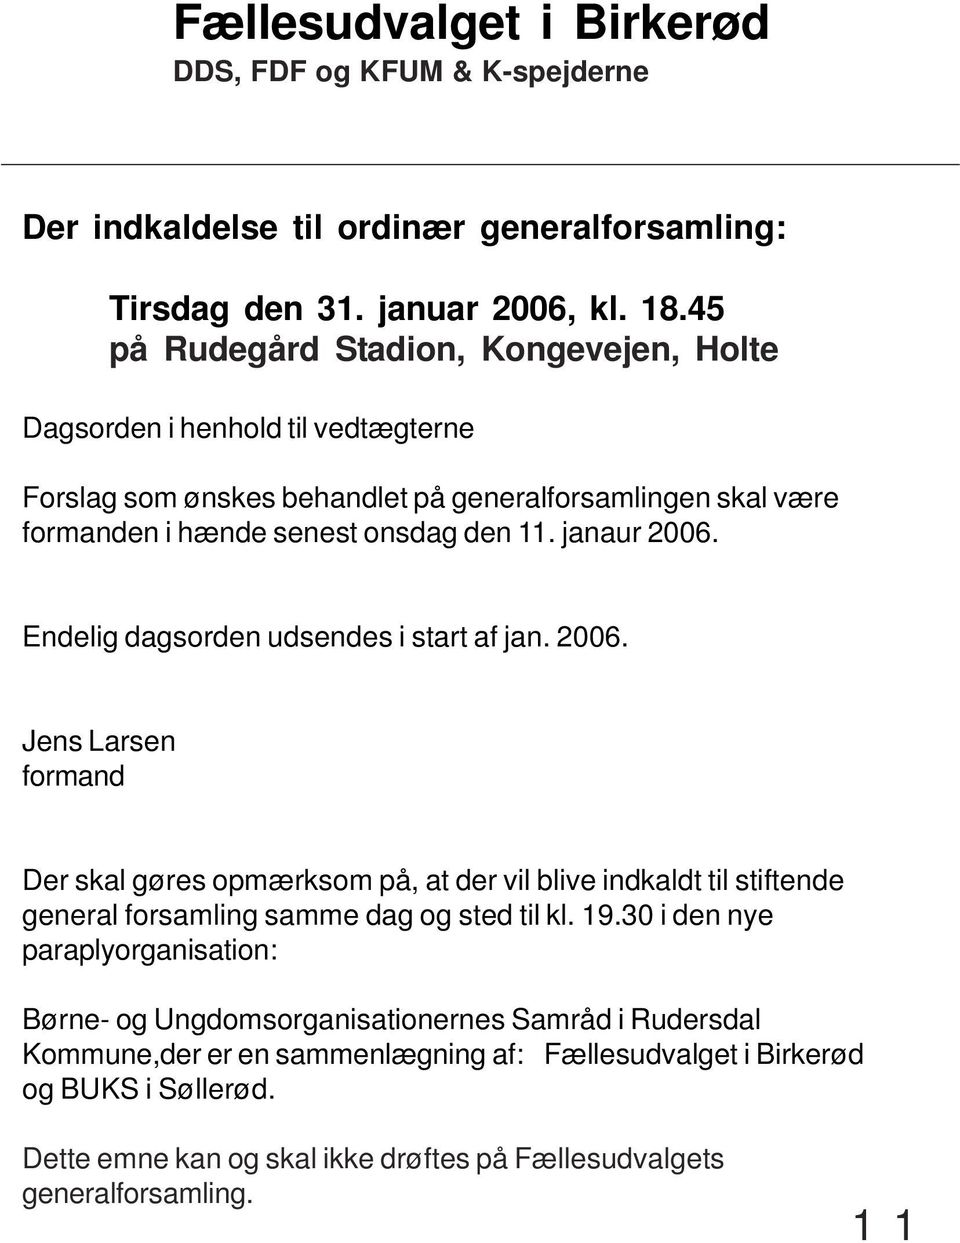 Endelig dagsorden udsendes i start af jan. 2006. Jens Larsen formand Der skal gøres opmærksom på, at der vil blive indkaldt til stiftende general forsamling samme dag og sted til kl. 19.